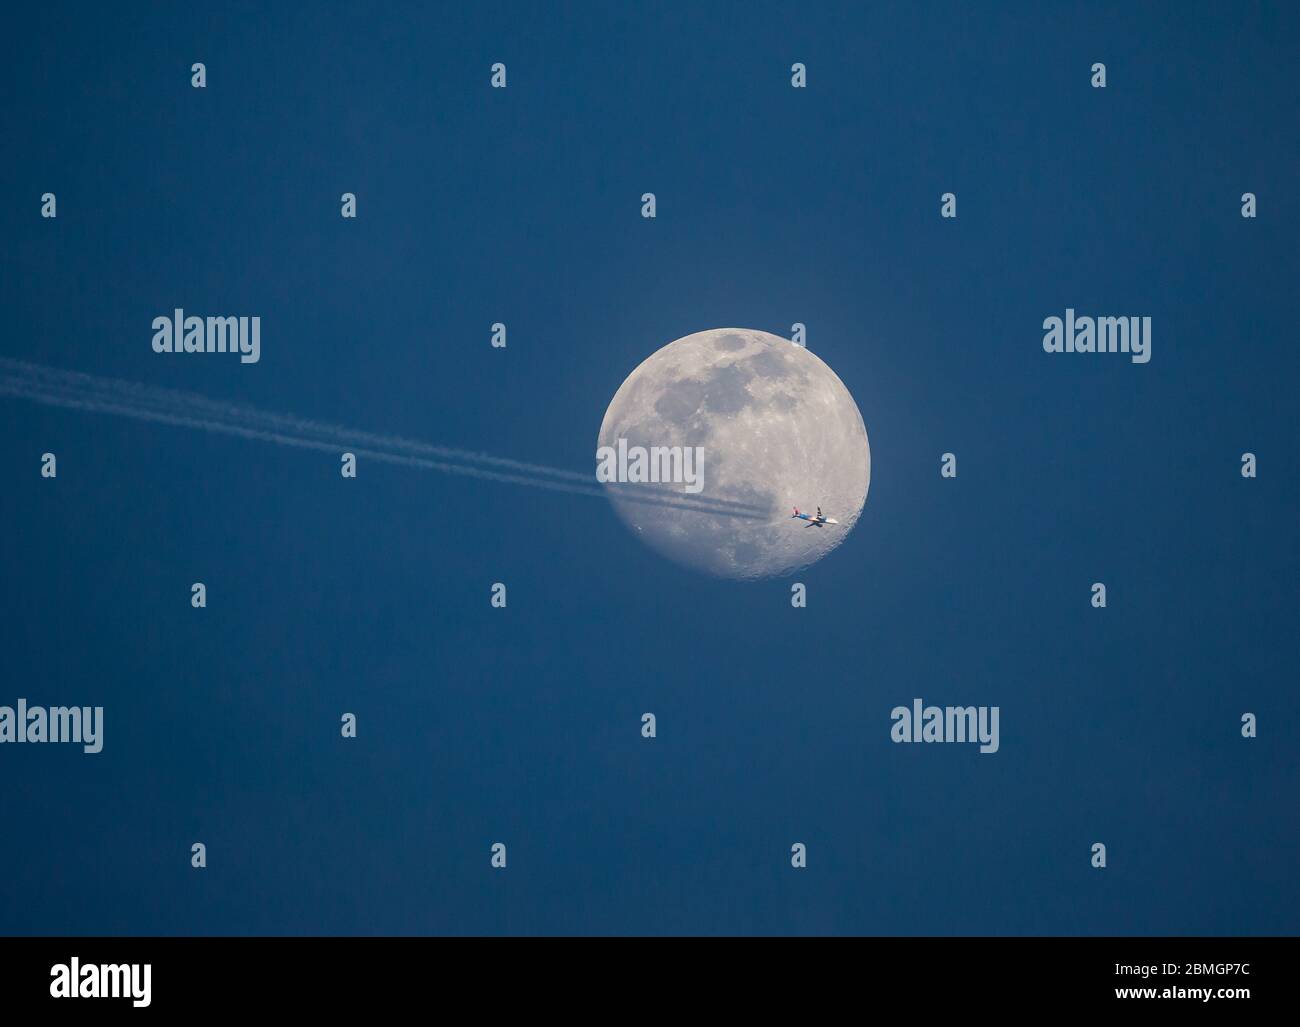 Un aereo di linea Allegiant Airlines passa davanti a una luna piena ad alta quota. Foto Stock